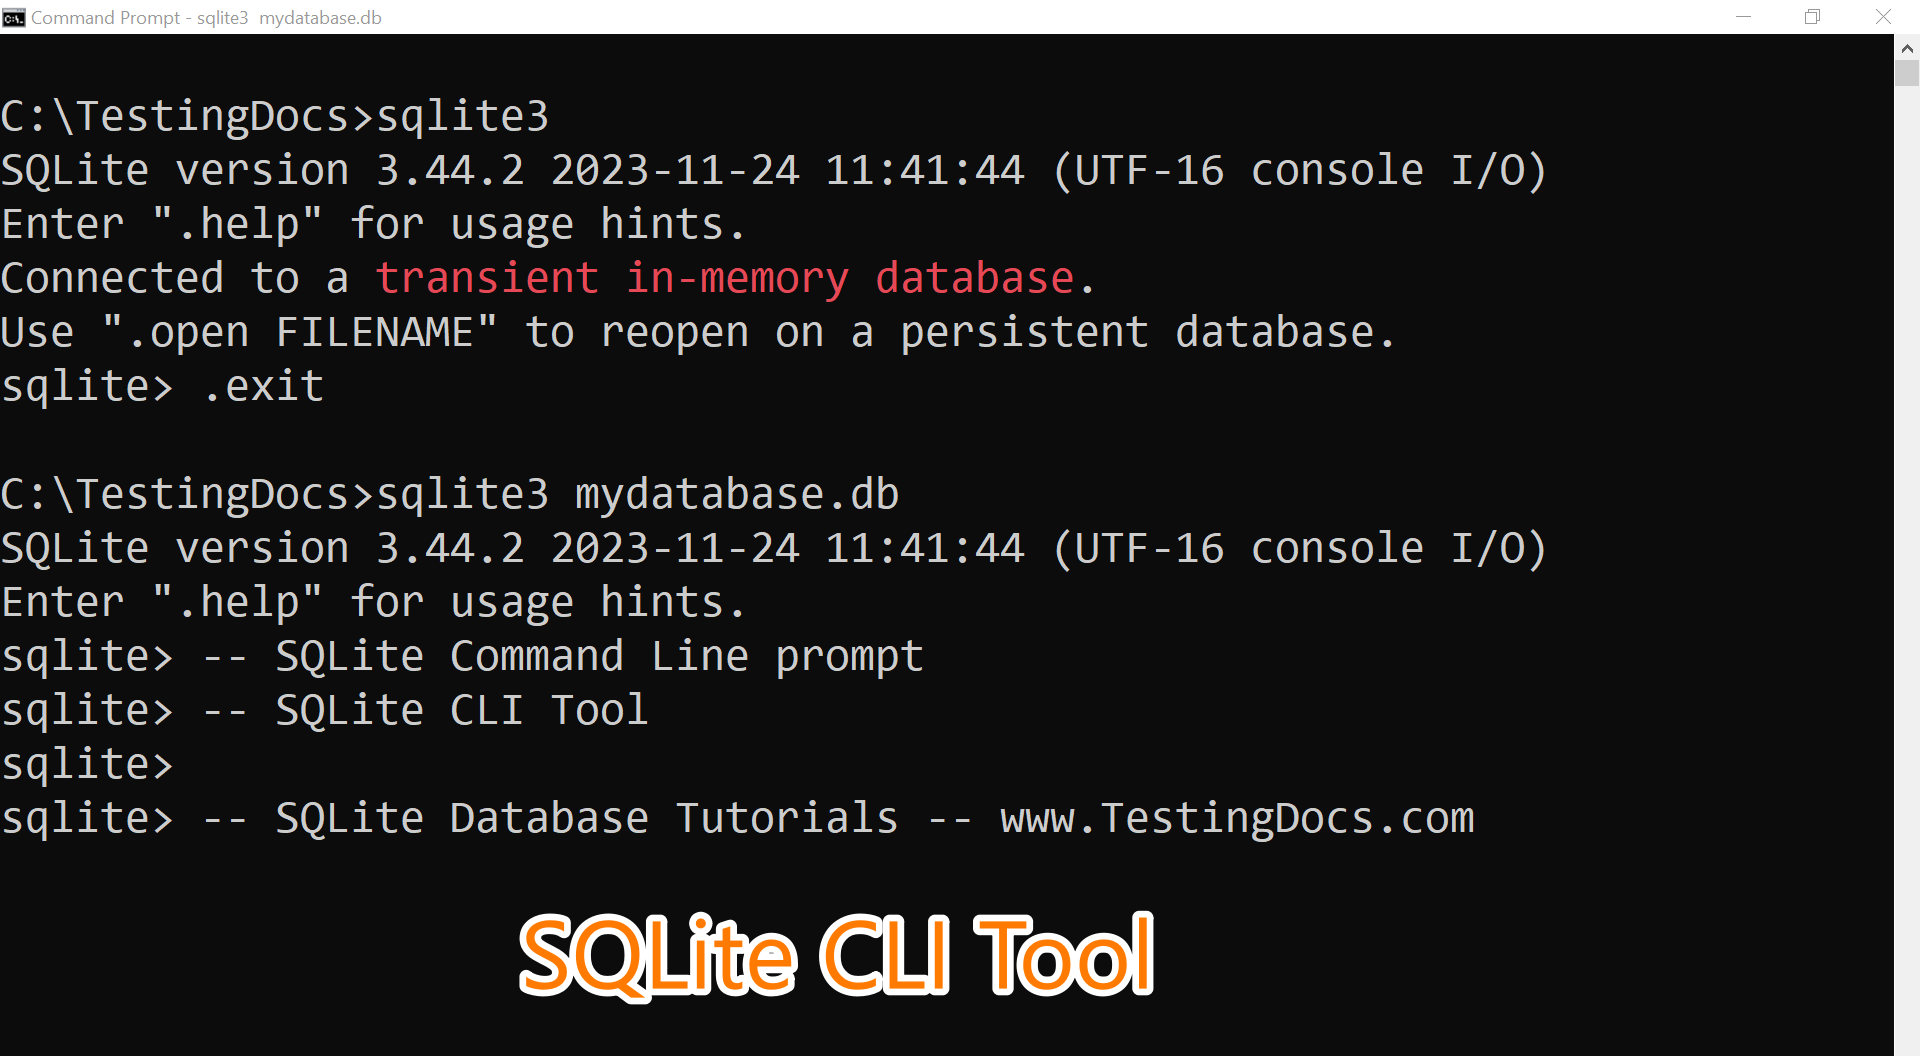 SQLite CLI Tool